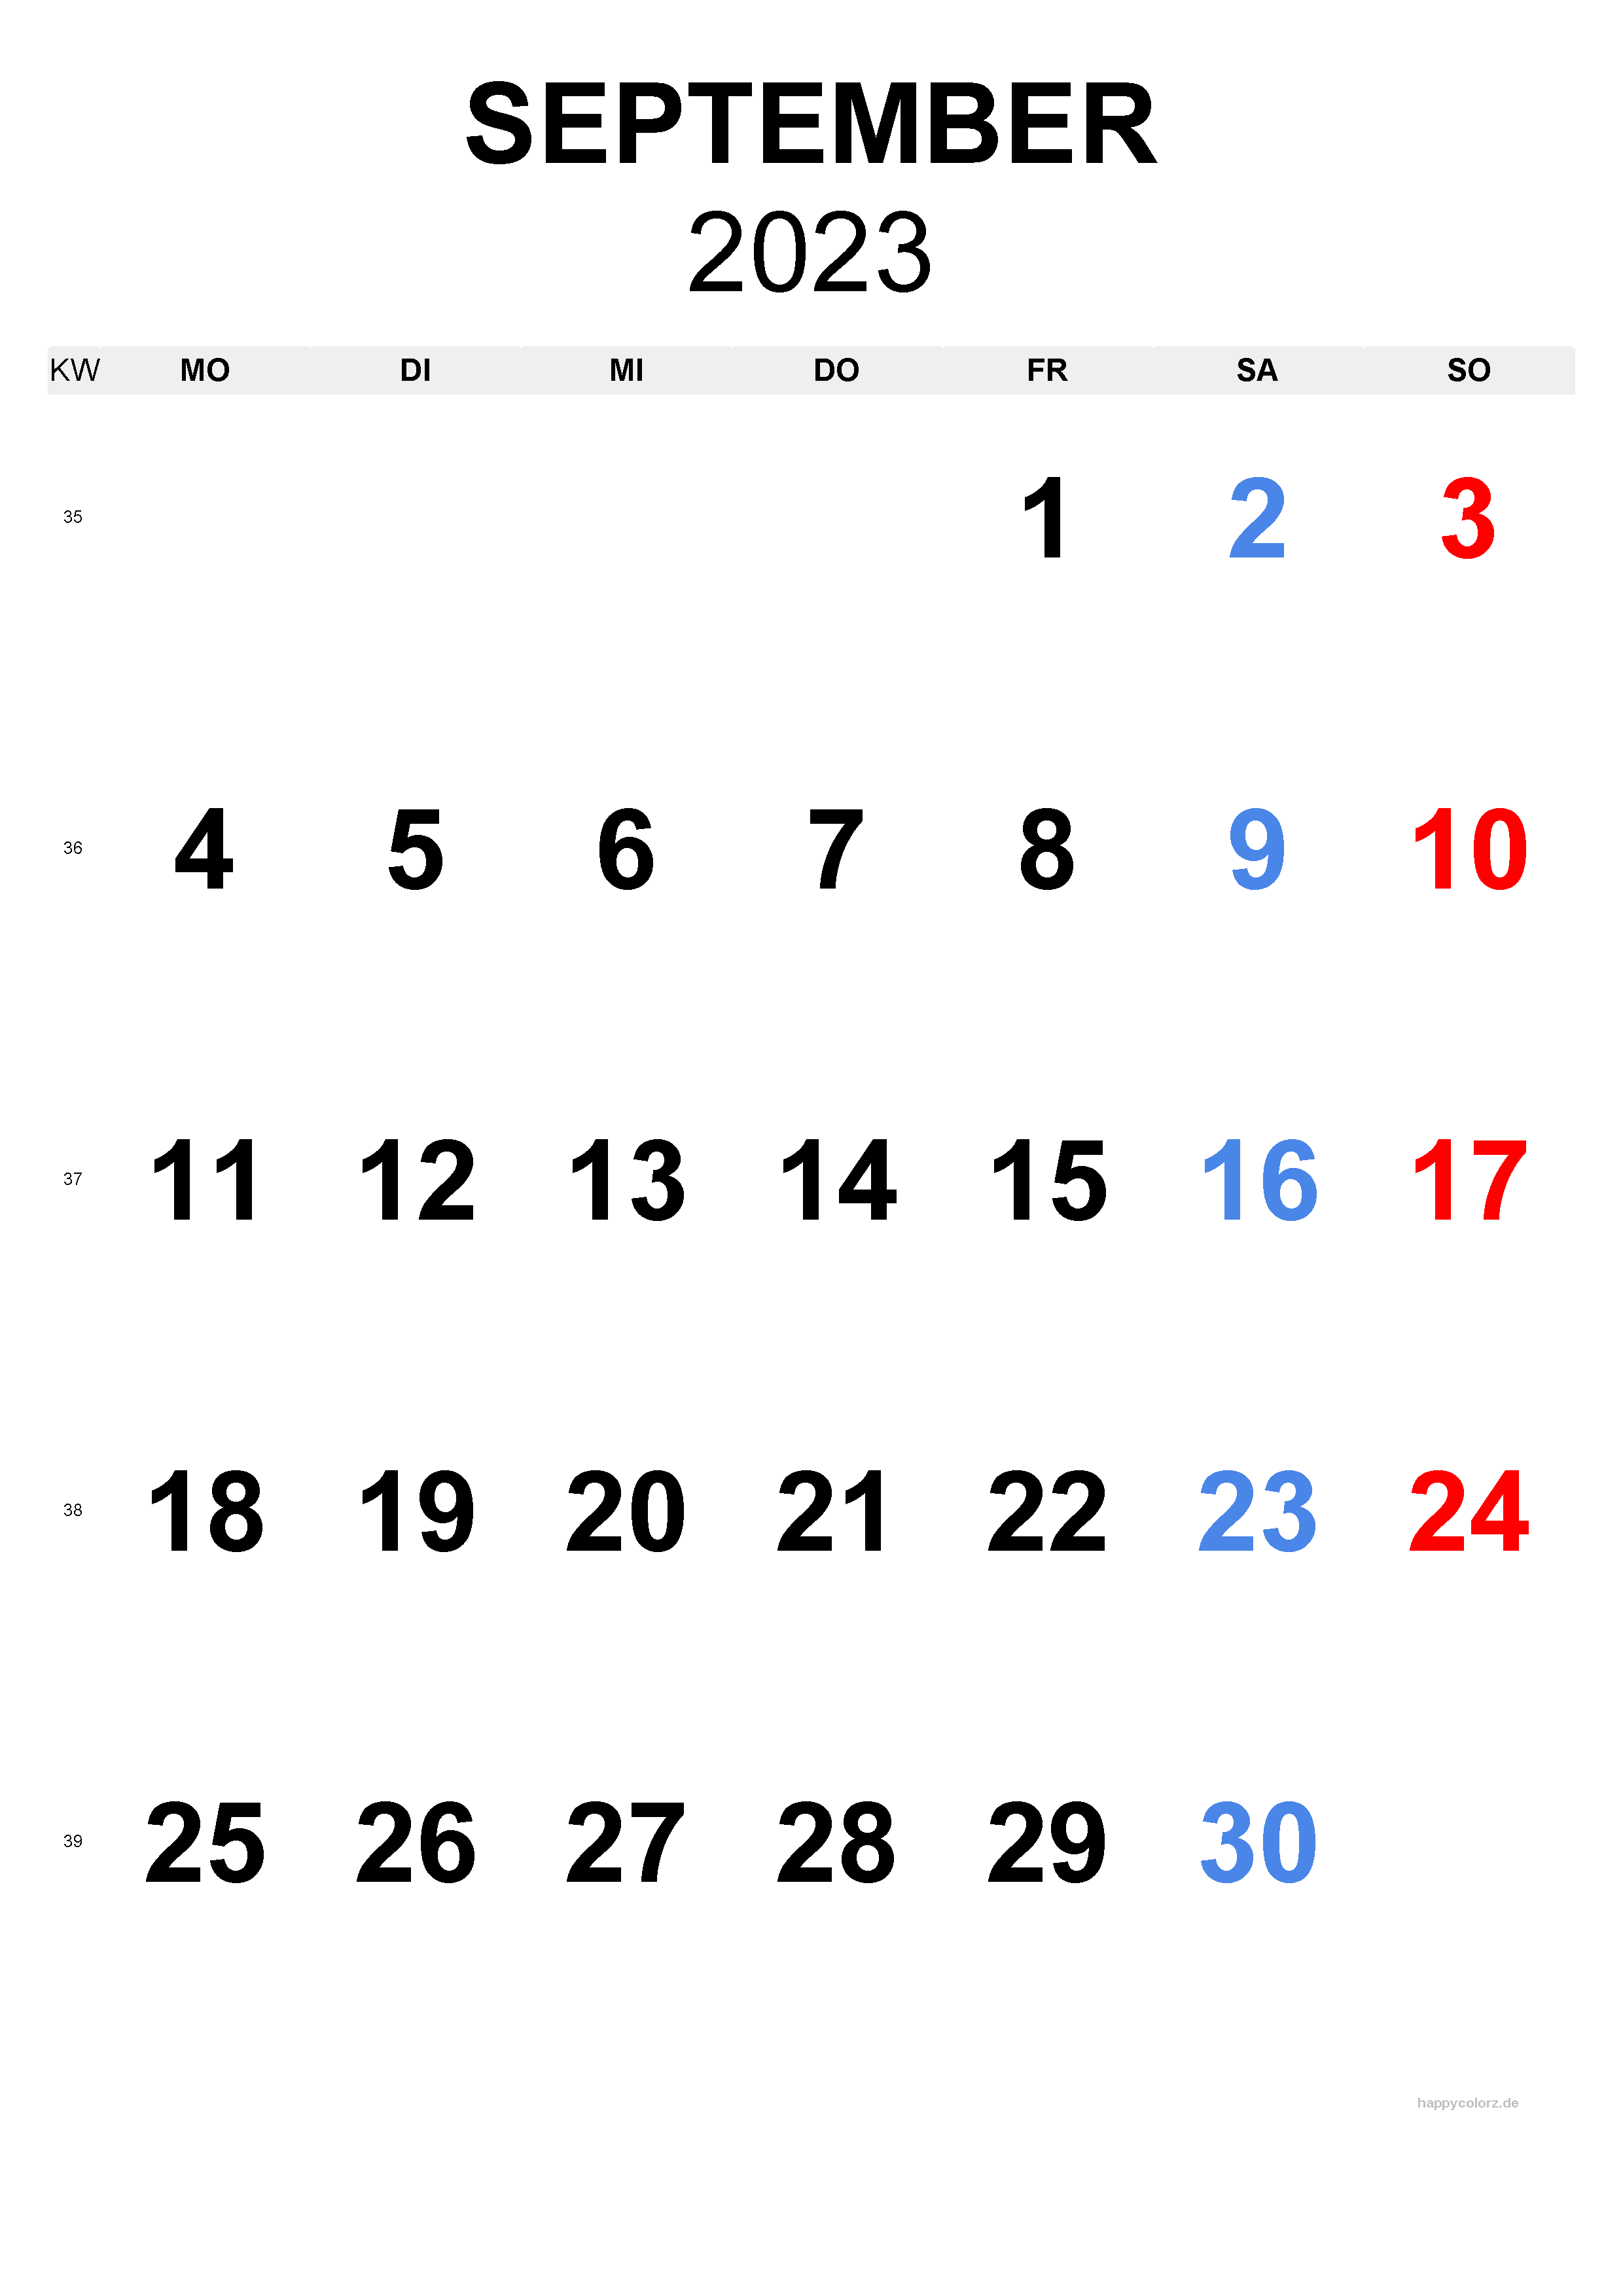 September 2023 Kalender - Hochformat, kostenlos zum Ausdrucken